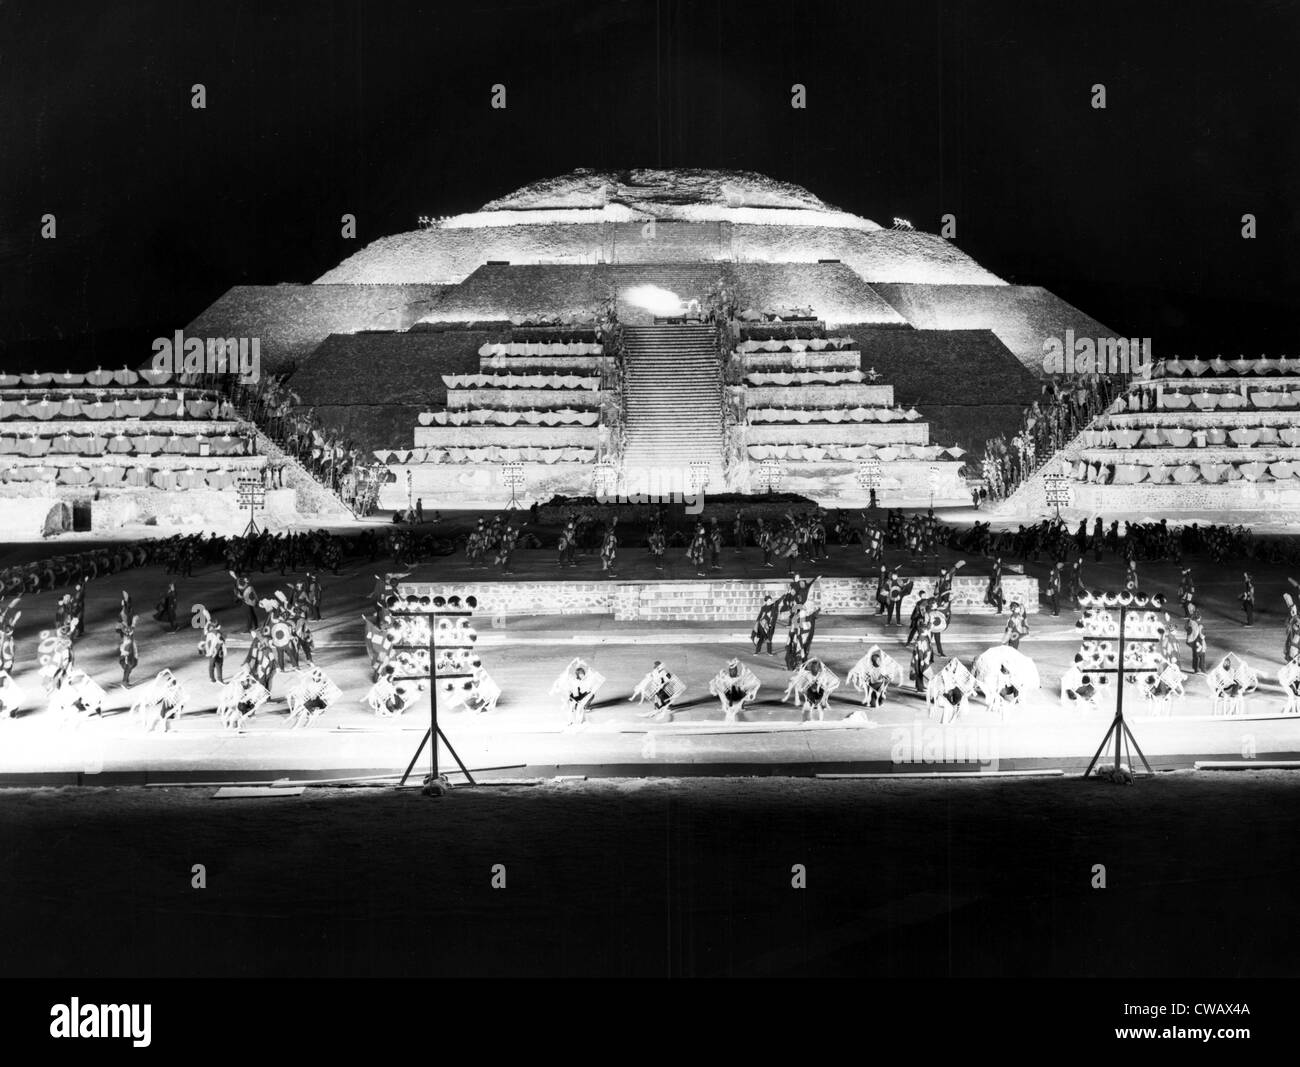 1968 Olympics, rehearsal of opening ceremonies at The Pyramid Of The Moon, Mexico City, Mexico, 10-10-1968.. Courtesy: CSU Stock Photo